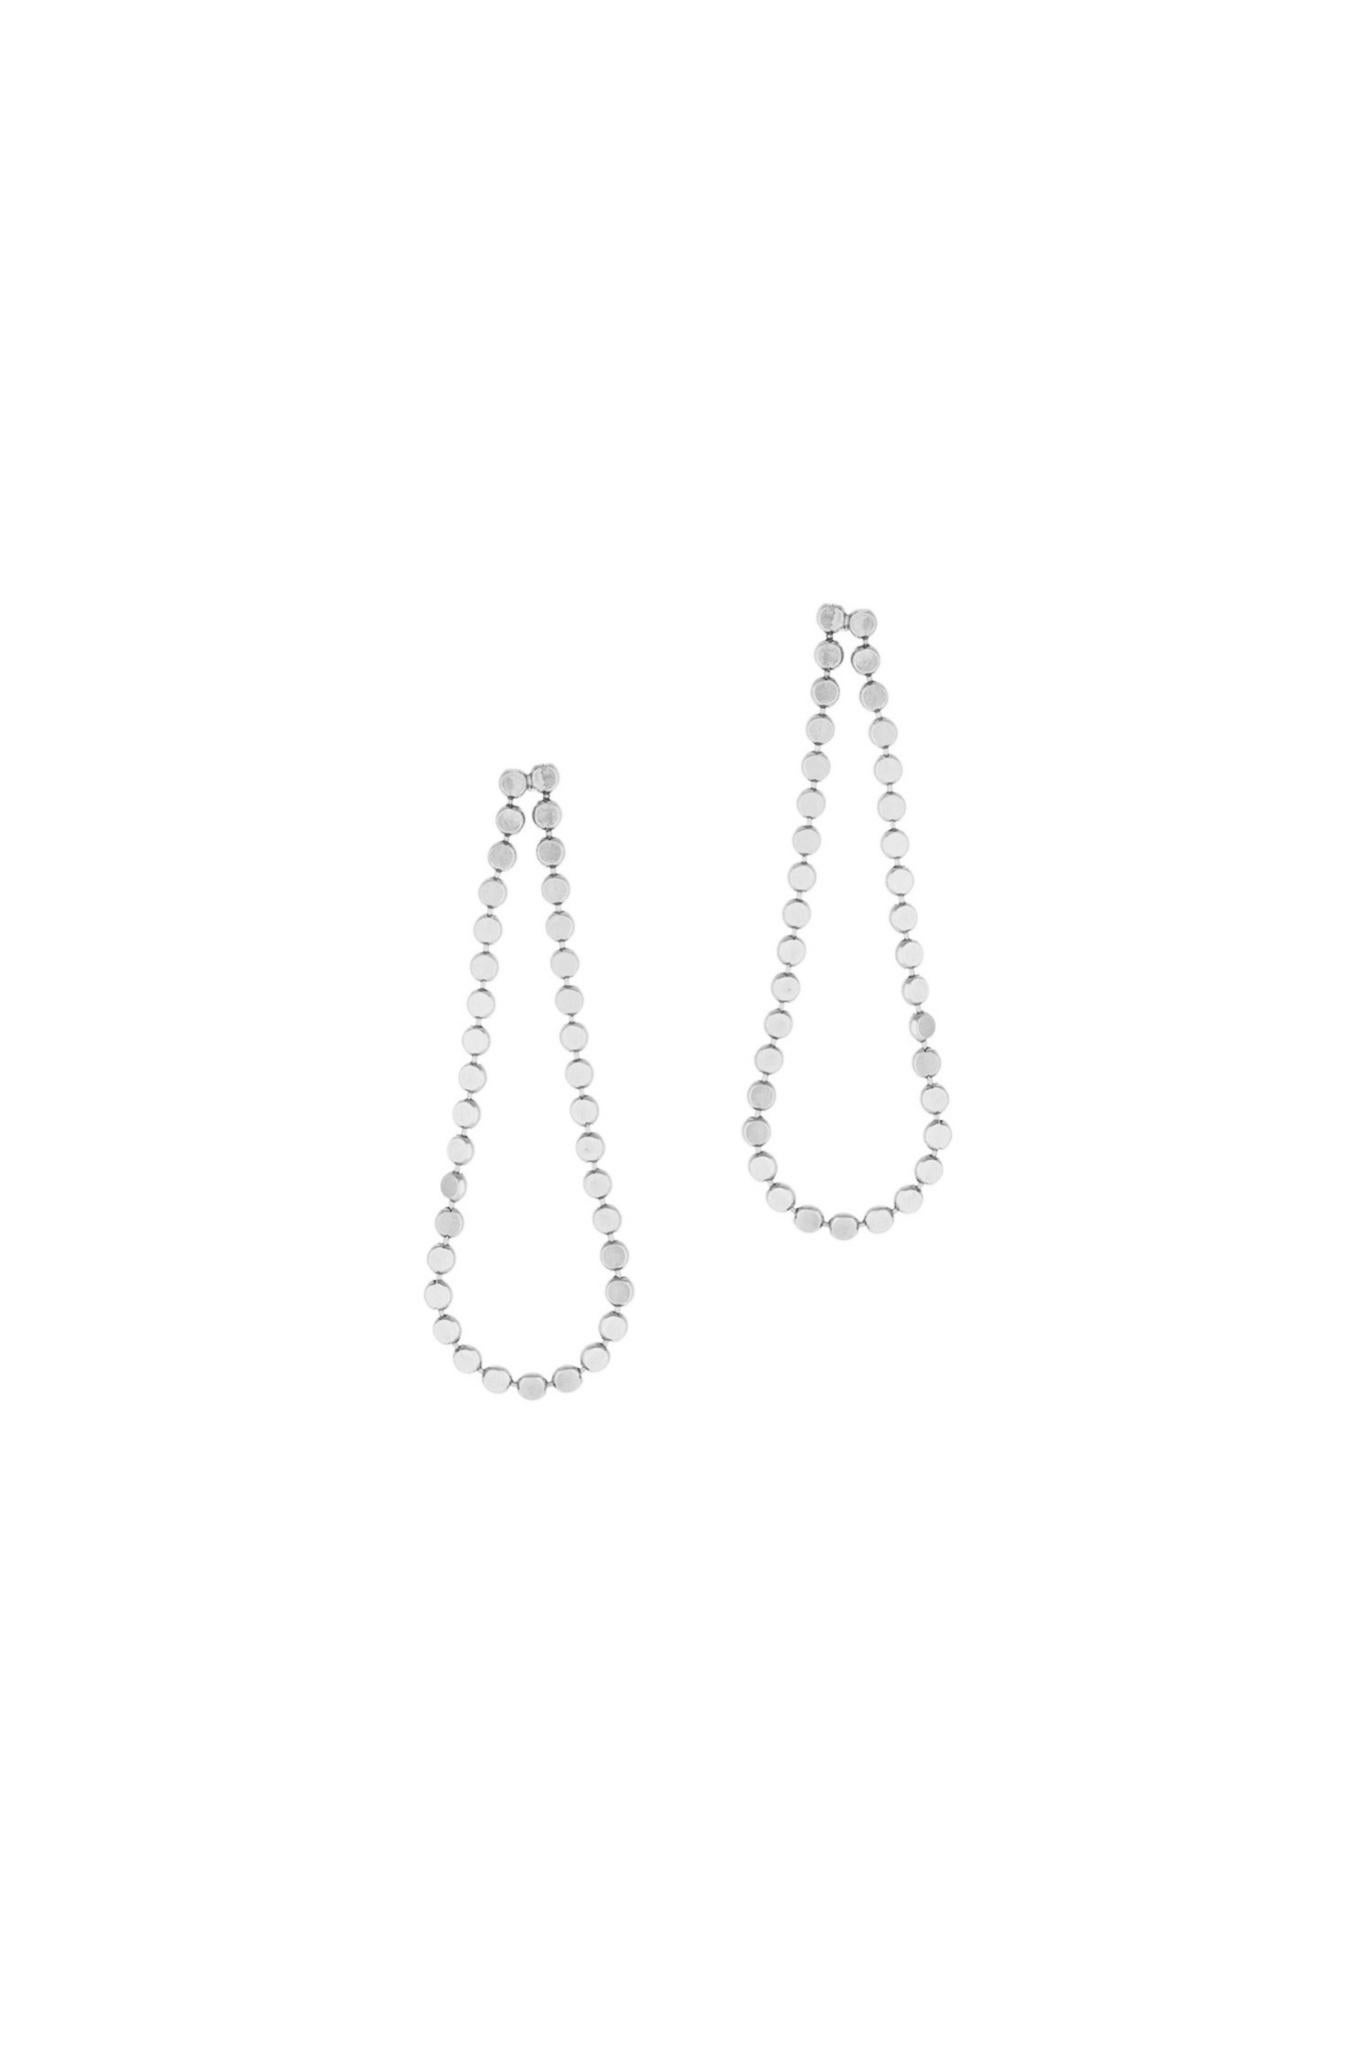 Earrings Long Round Motif Chain Sterling Silver Black Rhodium Greek Earrings For Sale 1